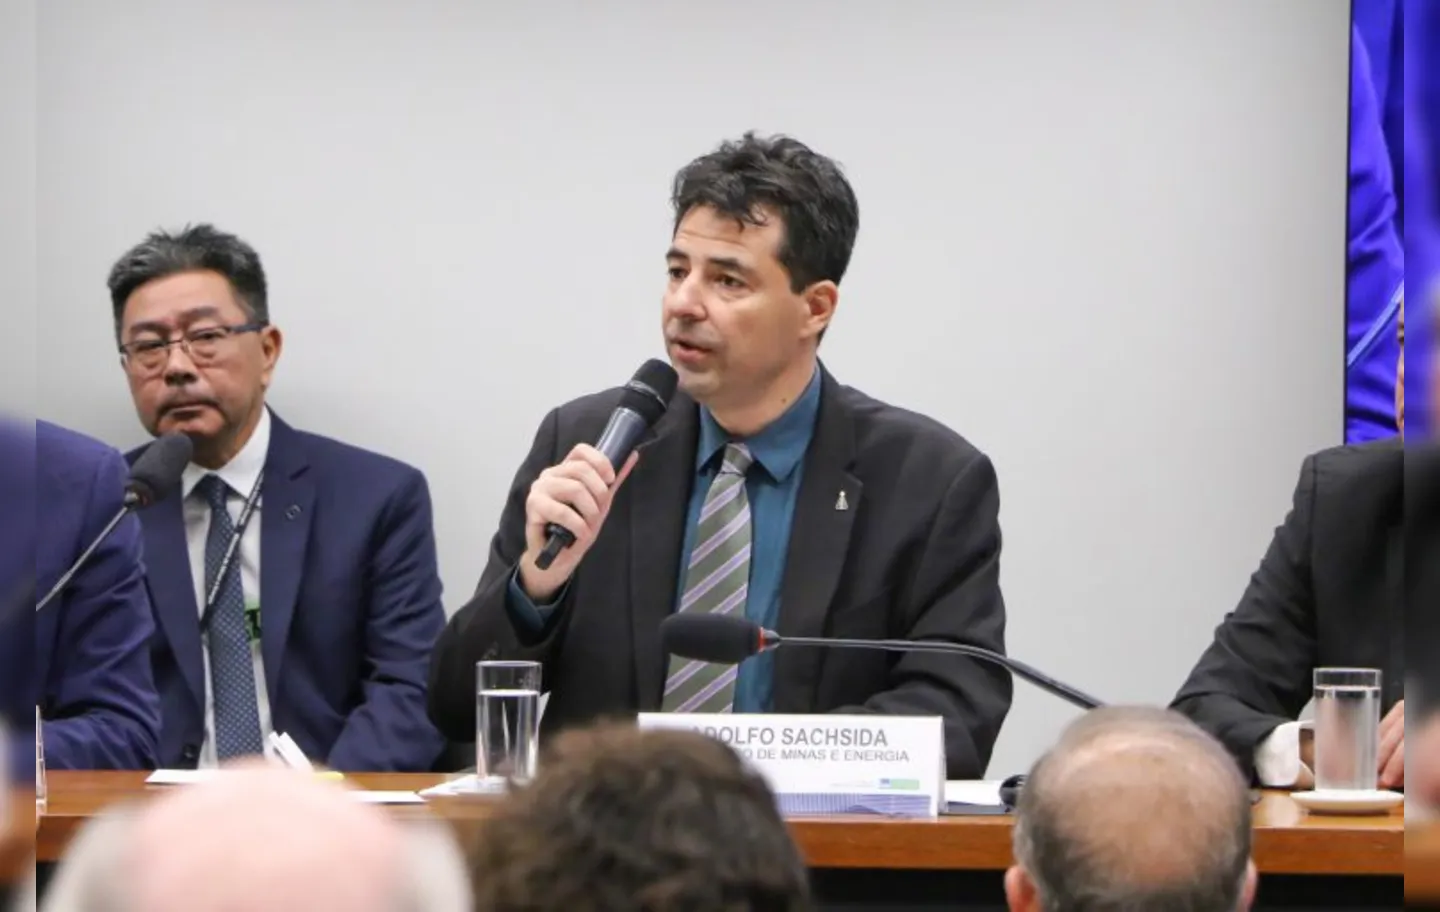 Adolfo Sachsida defende venda da Petrobrás mas diz que decisão não passa por Bolsonaro.